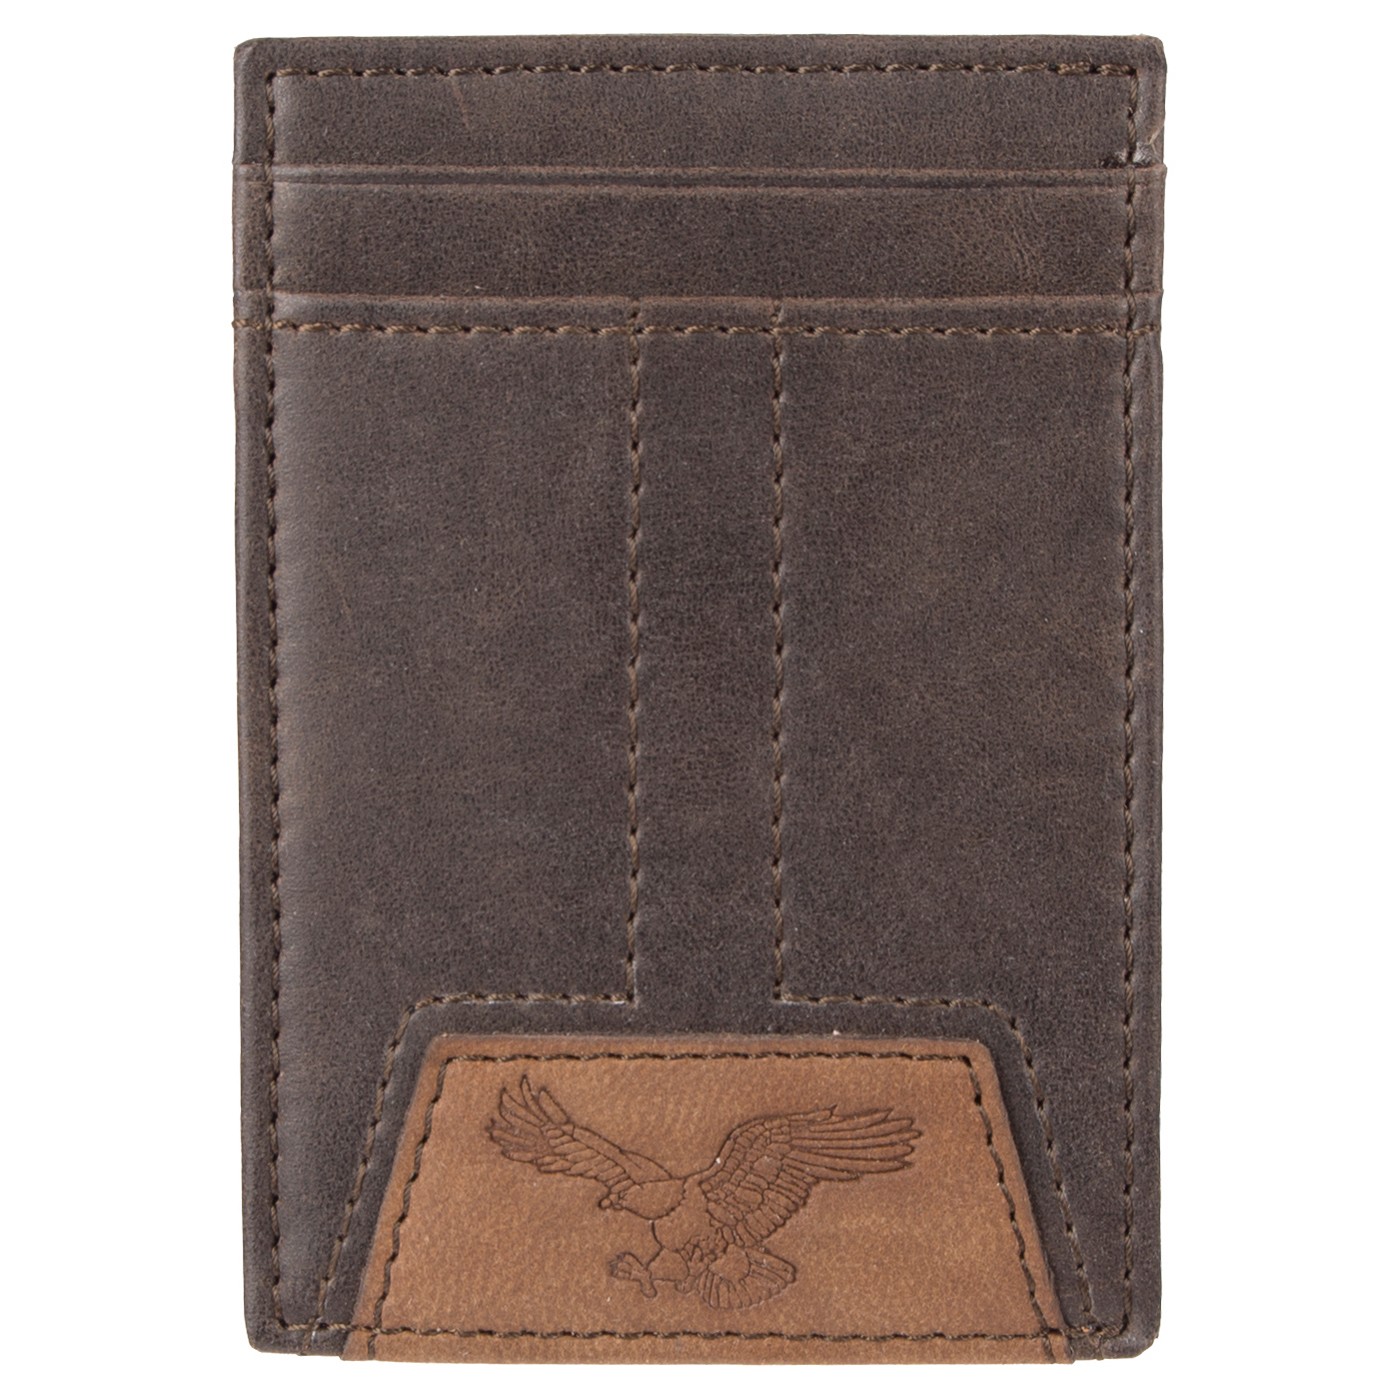 Levi's Denizen Men's Wide Magnetic Front Pocket Wallet - Brown - VIP Outlet